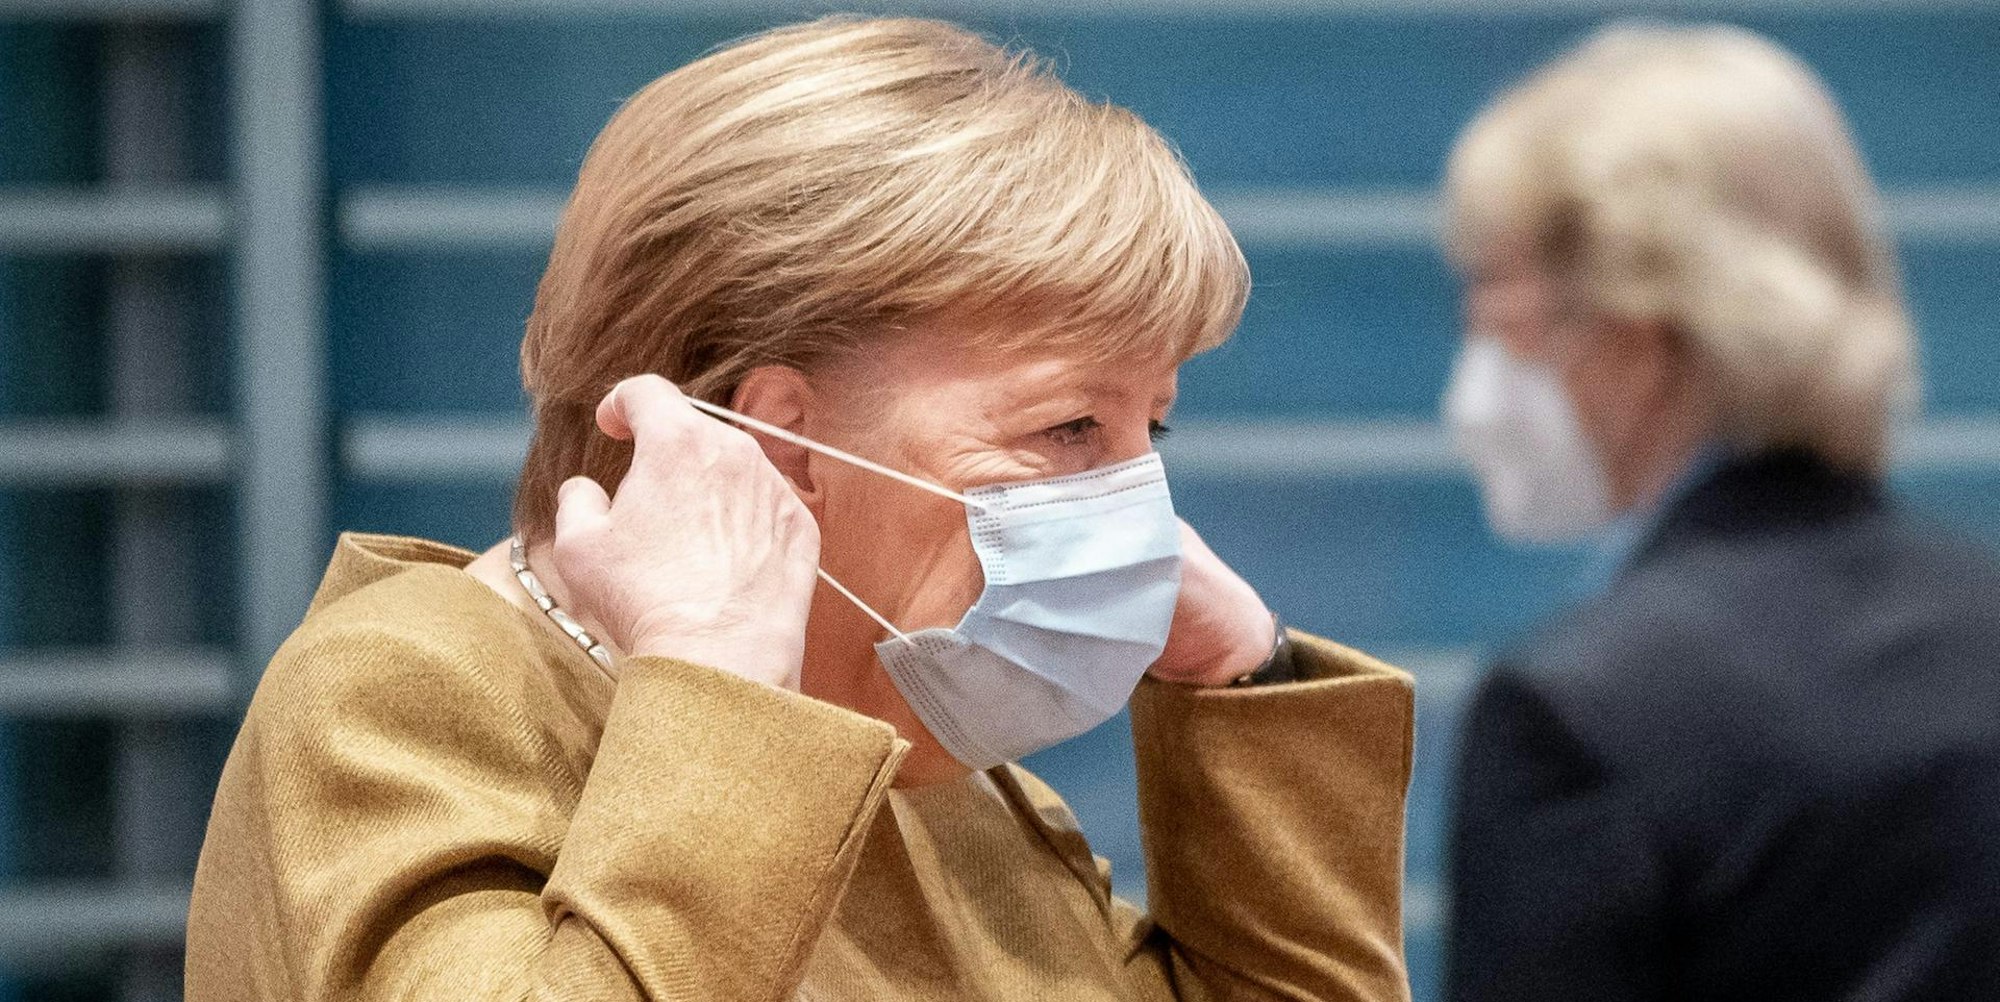 Kanzlerin Angela Merkel setzt Mund-Nasen-Schutz auf (1)